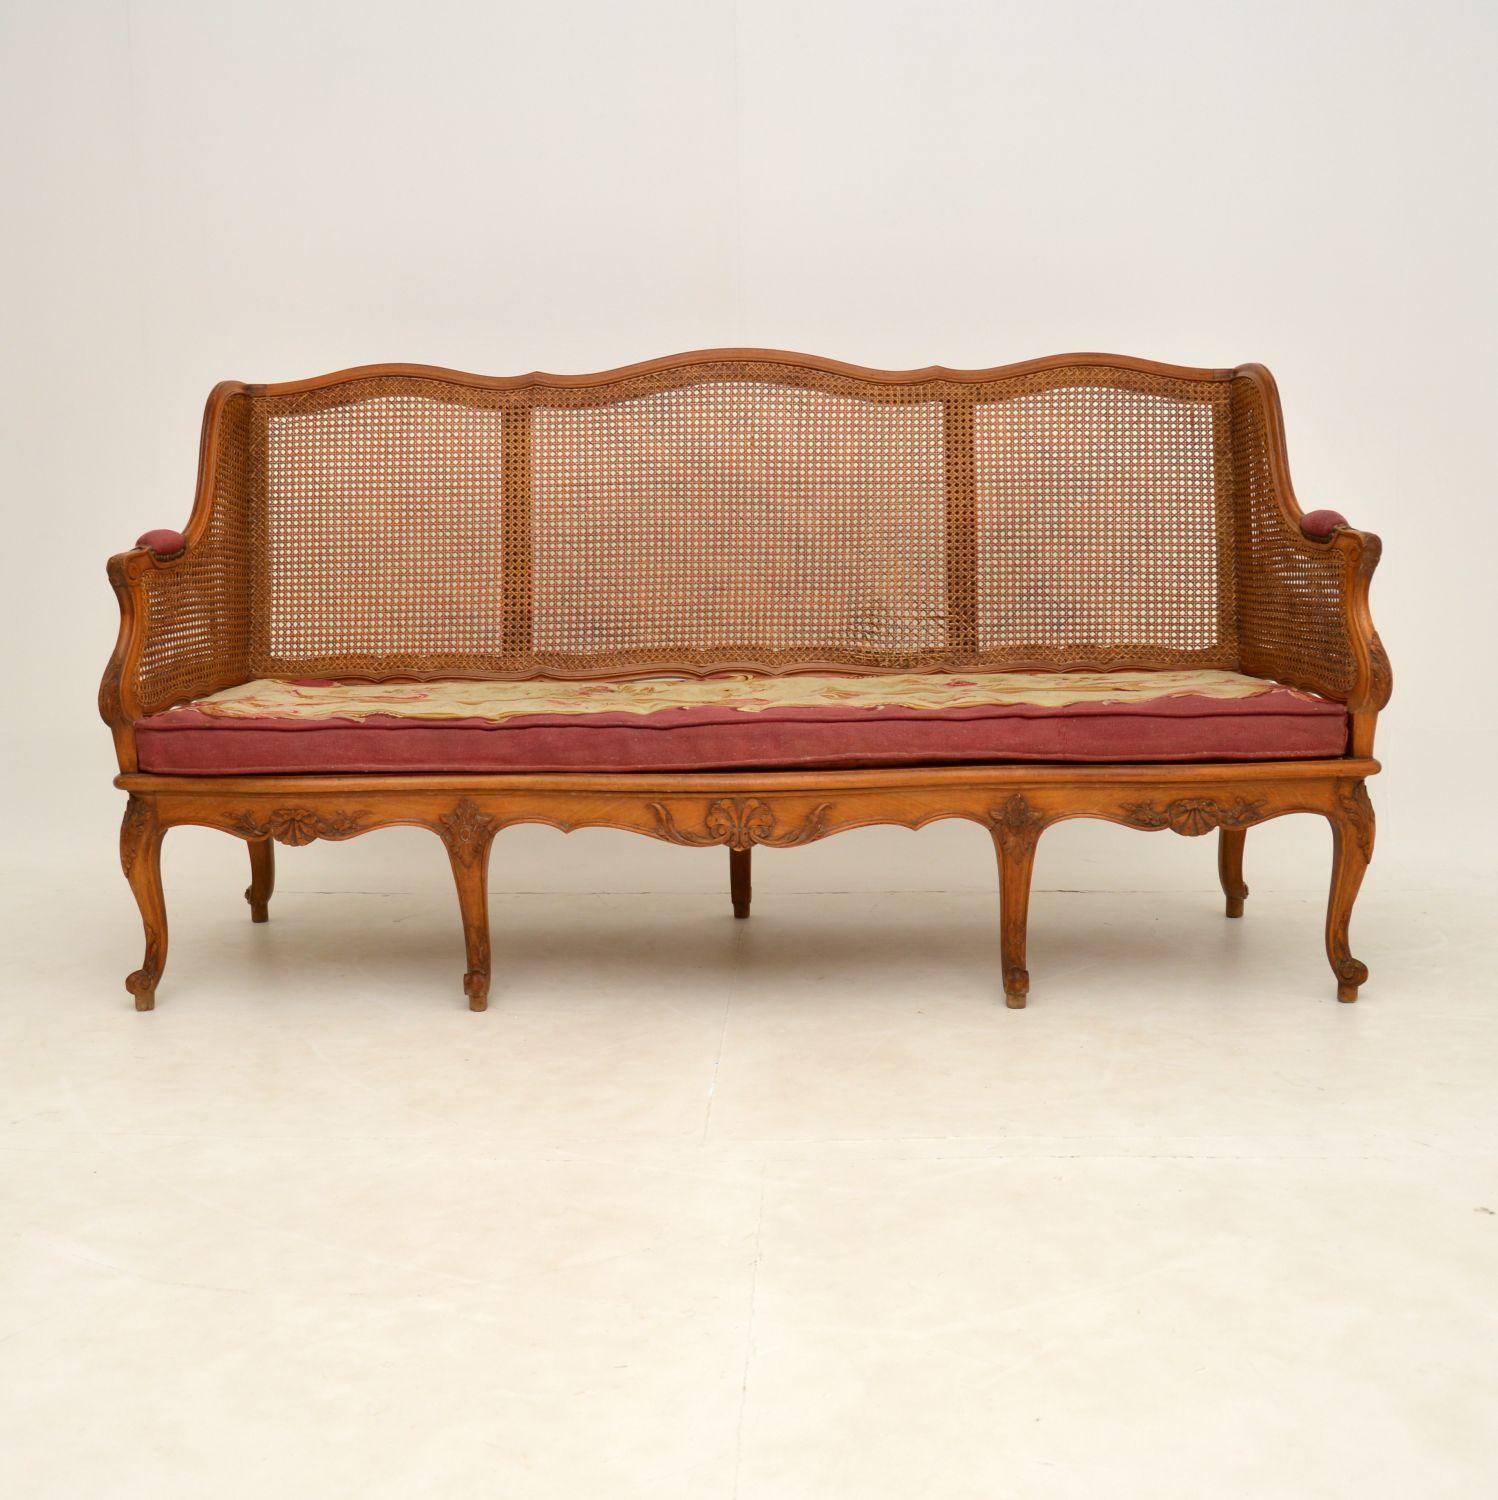 Eine atemberaubende Original Französisch antiken geschnitzten Nussbaum Sofa, mit einem caned Sitz und Rücken. Ich würde dies auf die Zeit zwischen 1860 und 1880 datieren.

Er ist von hervorragender Qualität, mit schönen Schnitzereien am ganzen